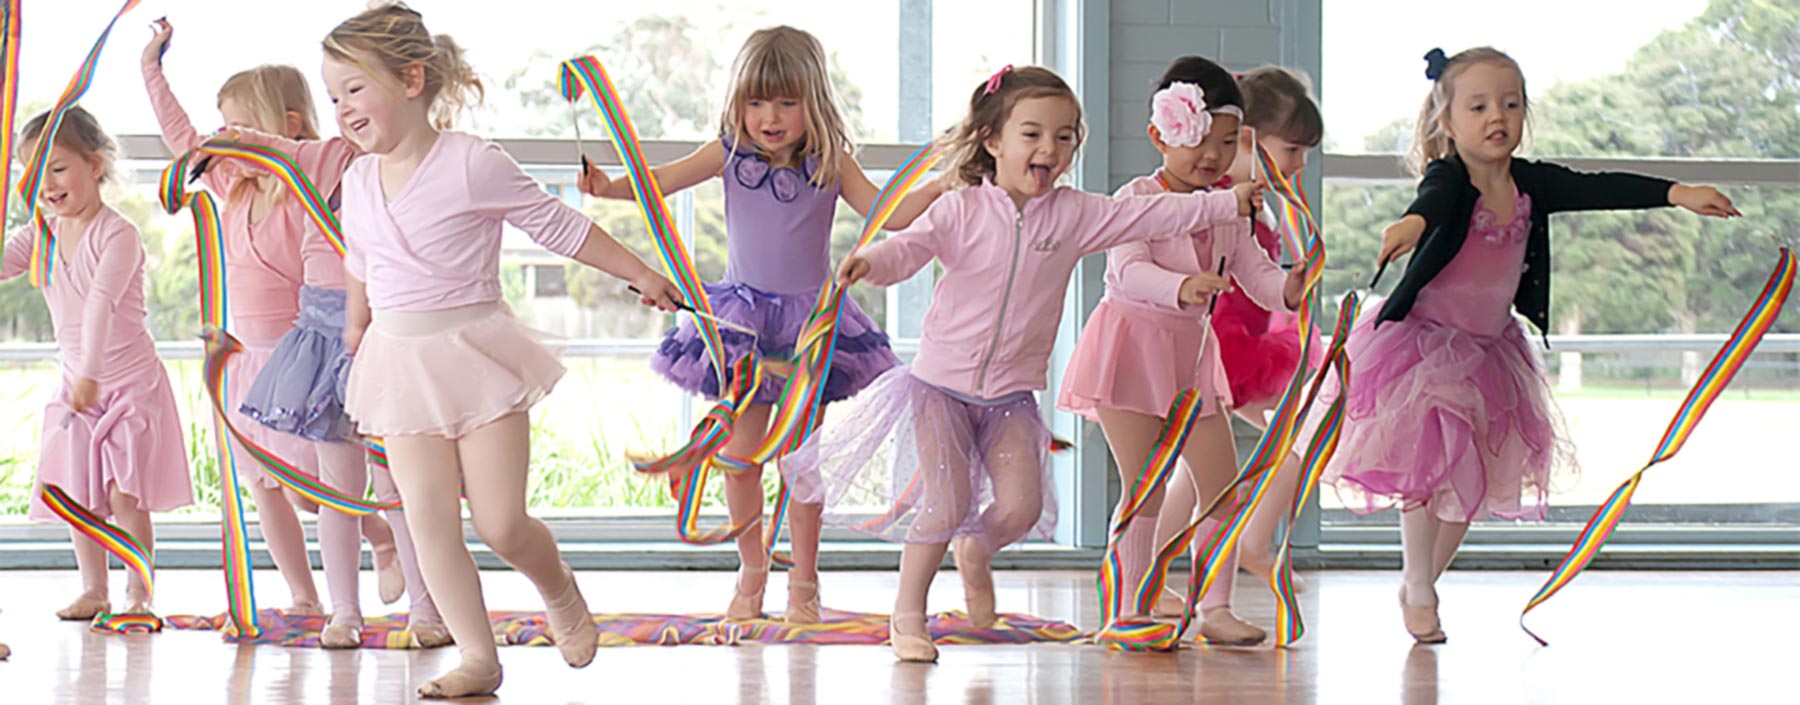 Kinderballet Cleveland - Ballet Classes for Toddlers - Redland Dance